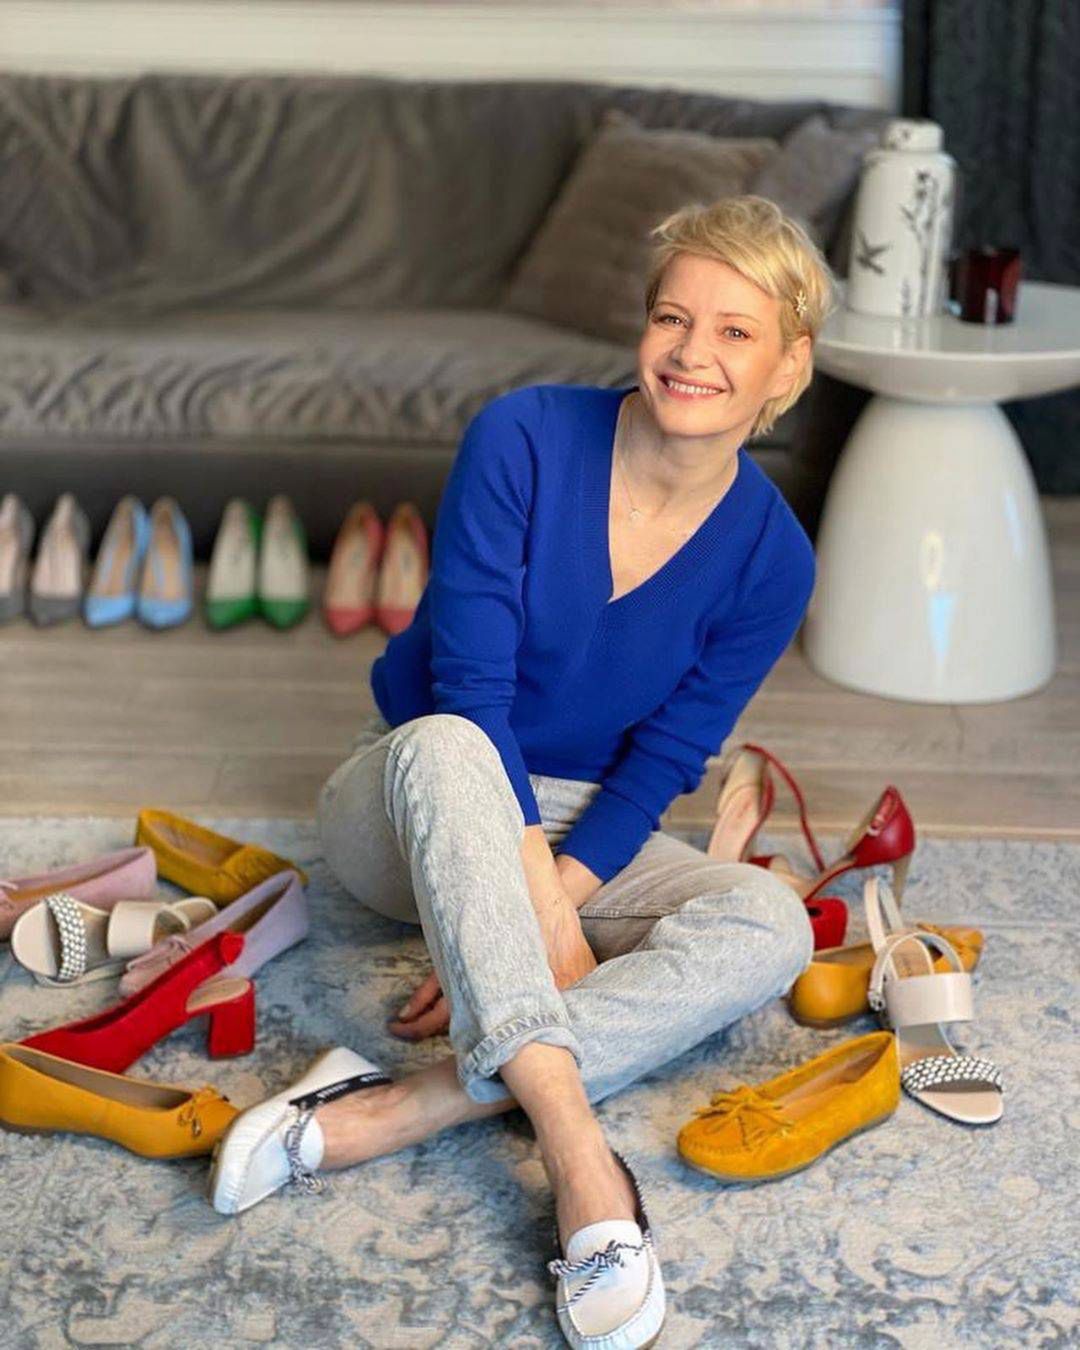 Małgorzata Kożuchowska ma sporą kolekcję butów